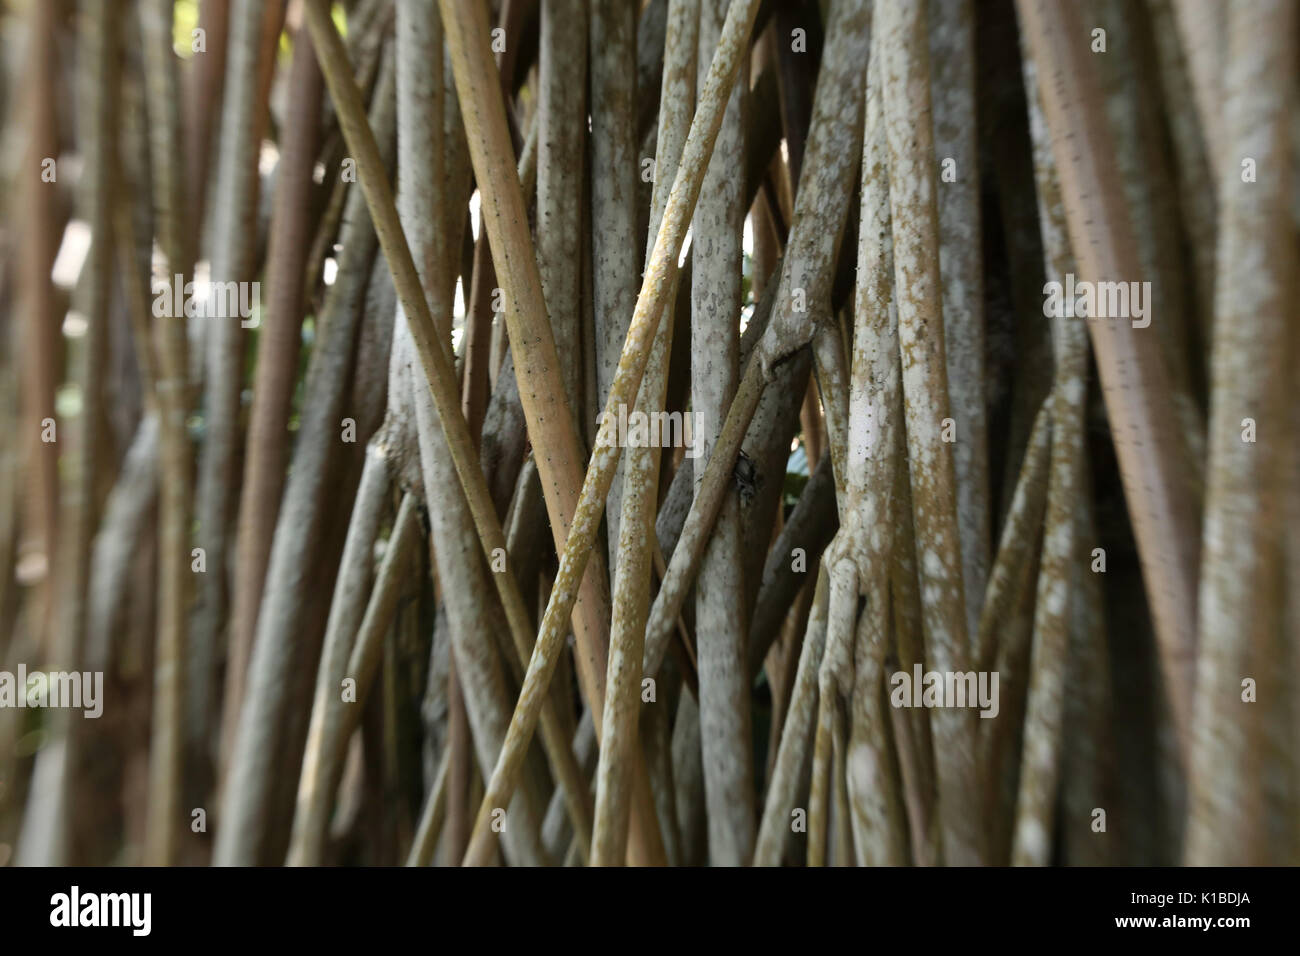 Les racines de mangrove - mangroveforest Banque D'Images